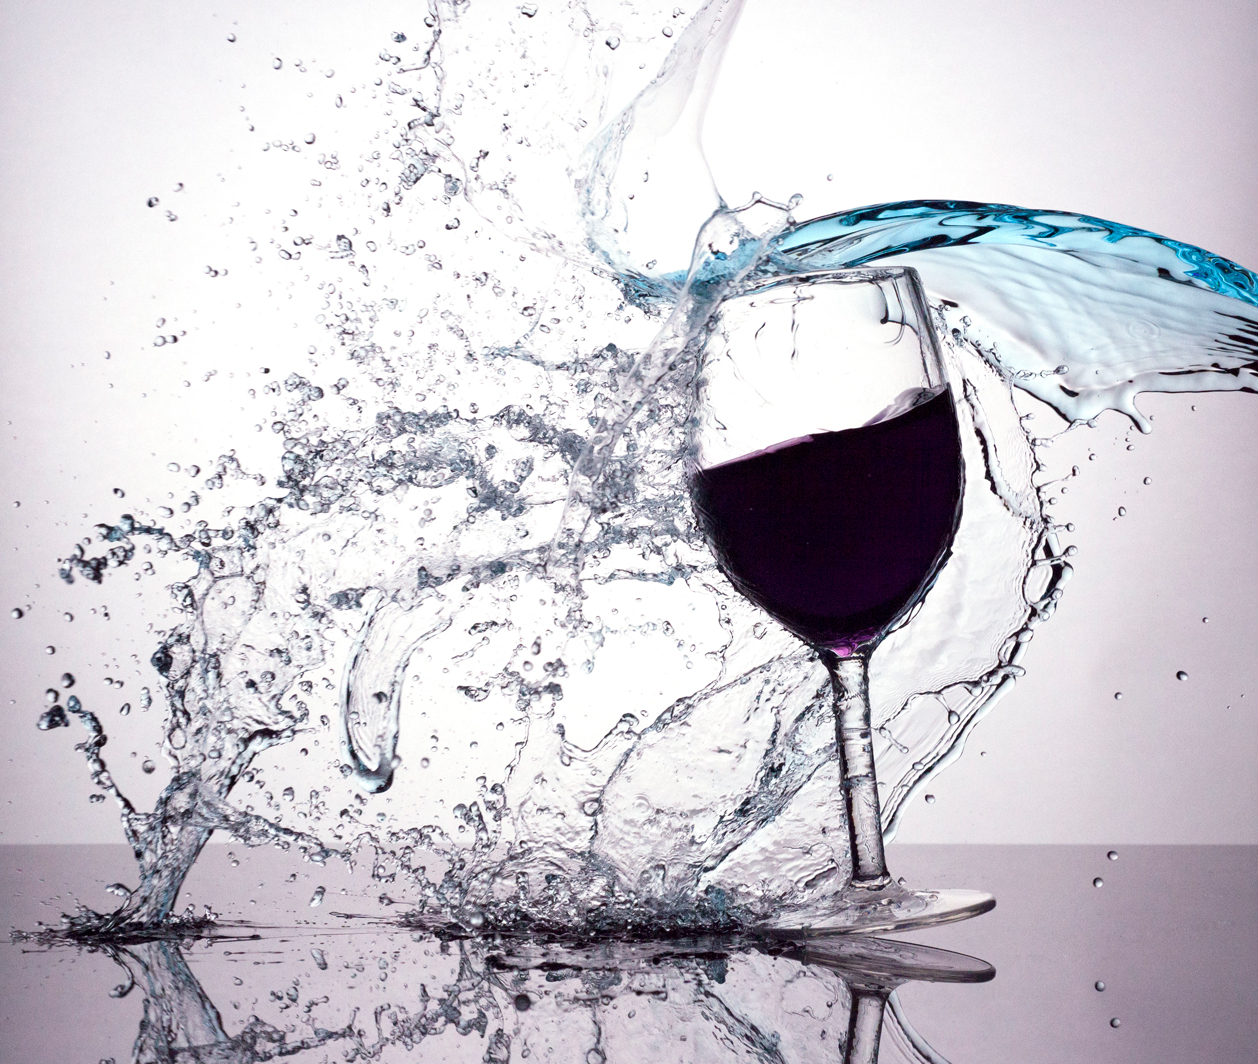 A splash of wine